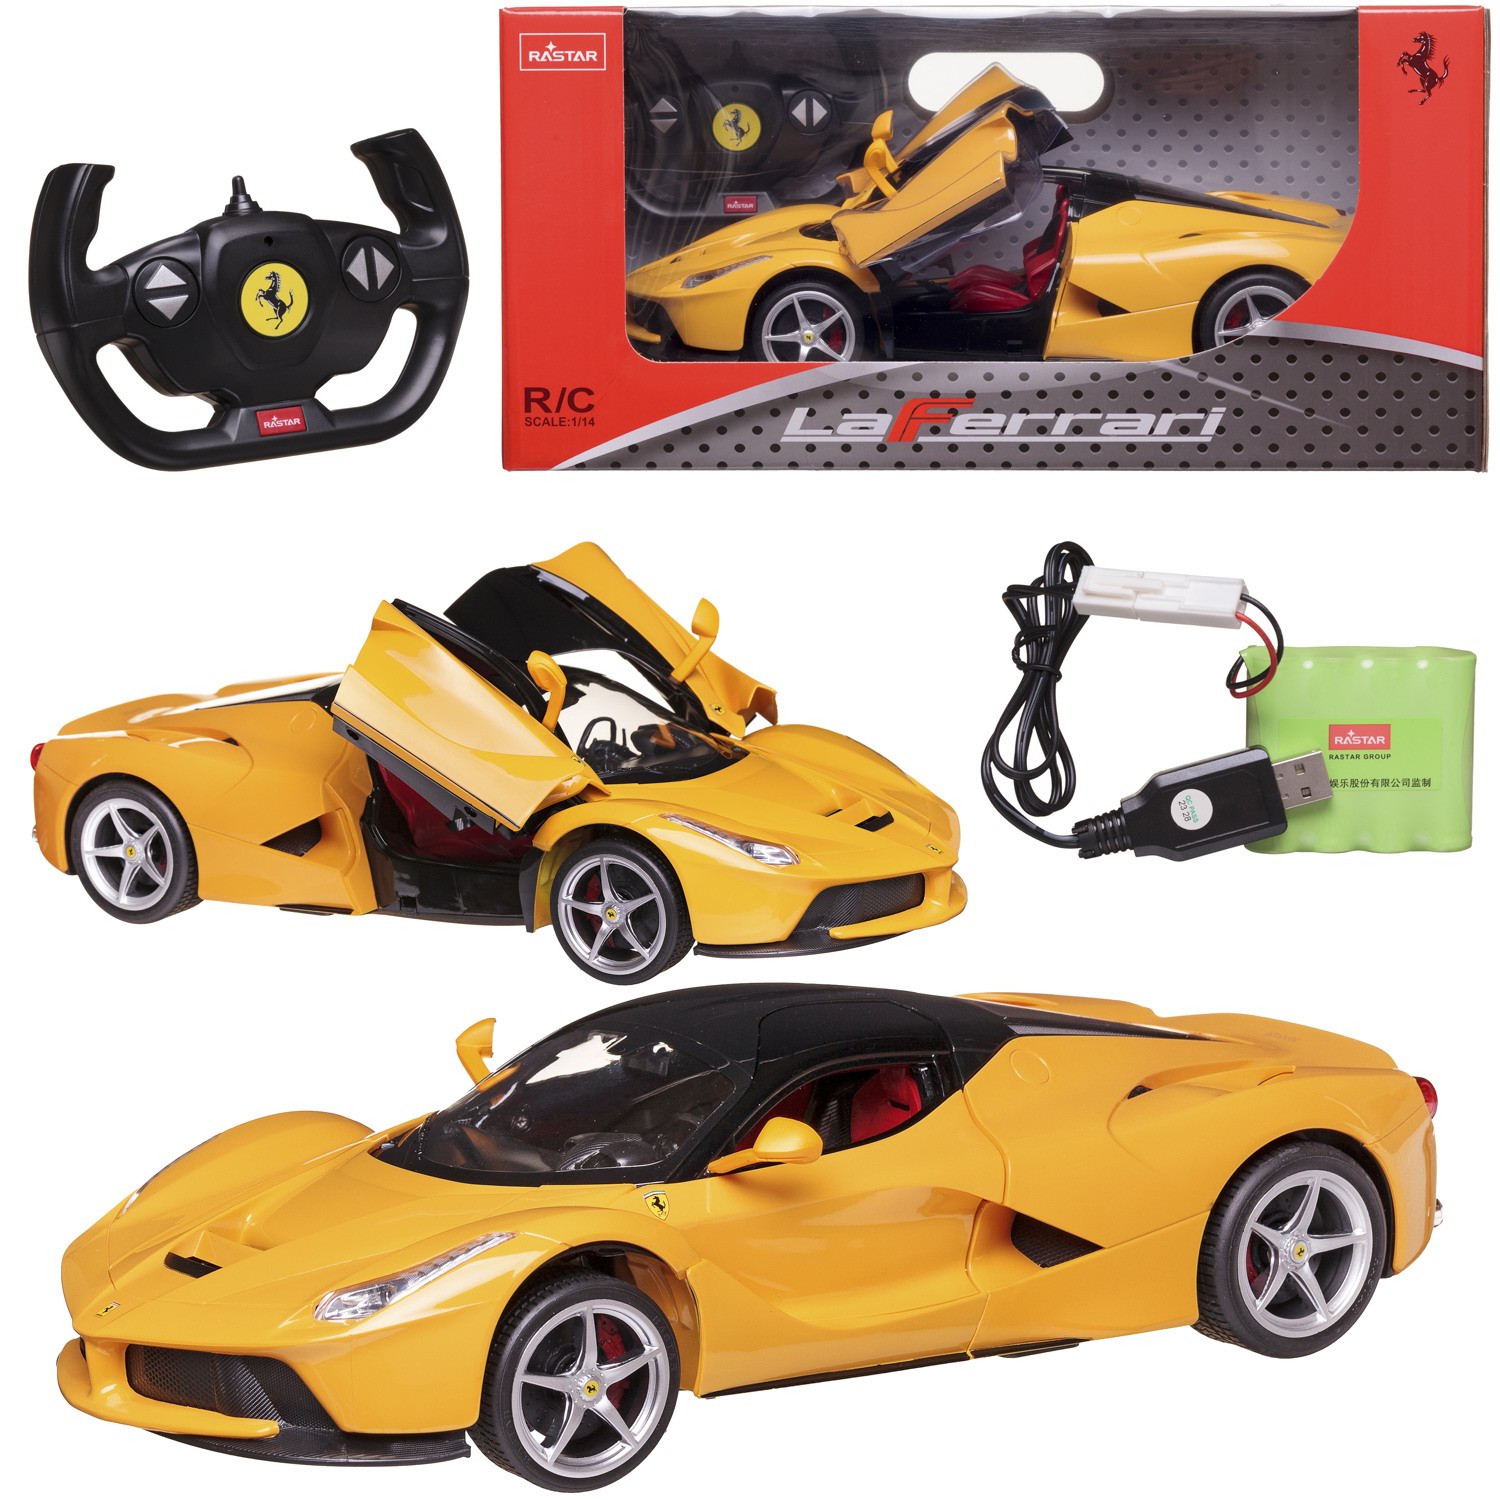 Машина р/у 1:14 Ferrari LaFerrari, цвет желтый, световые эффекты, аккумулятор в комплекте